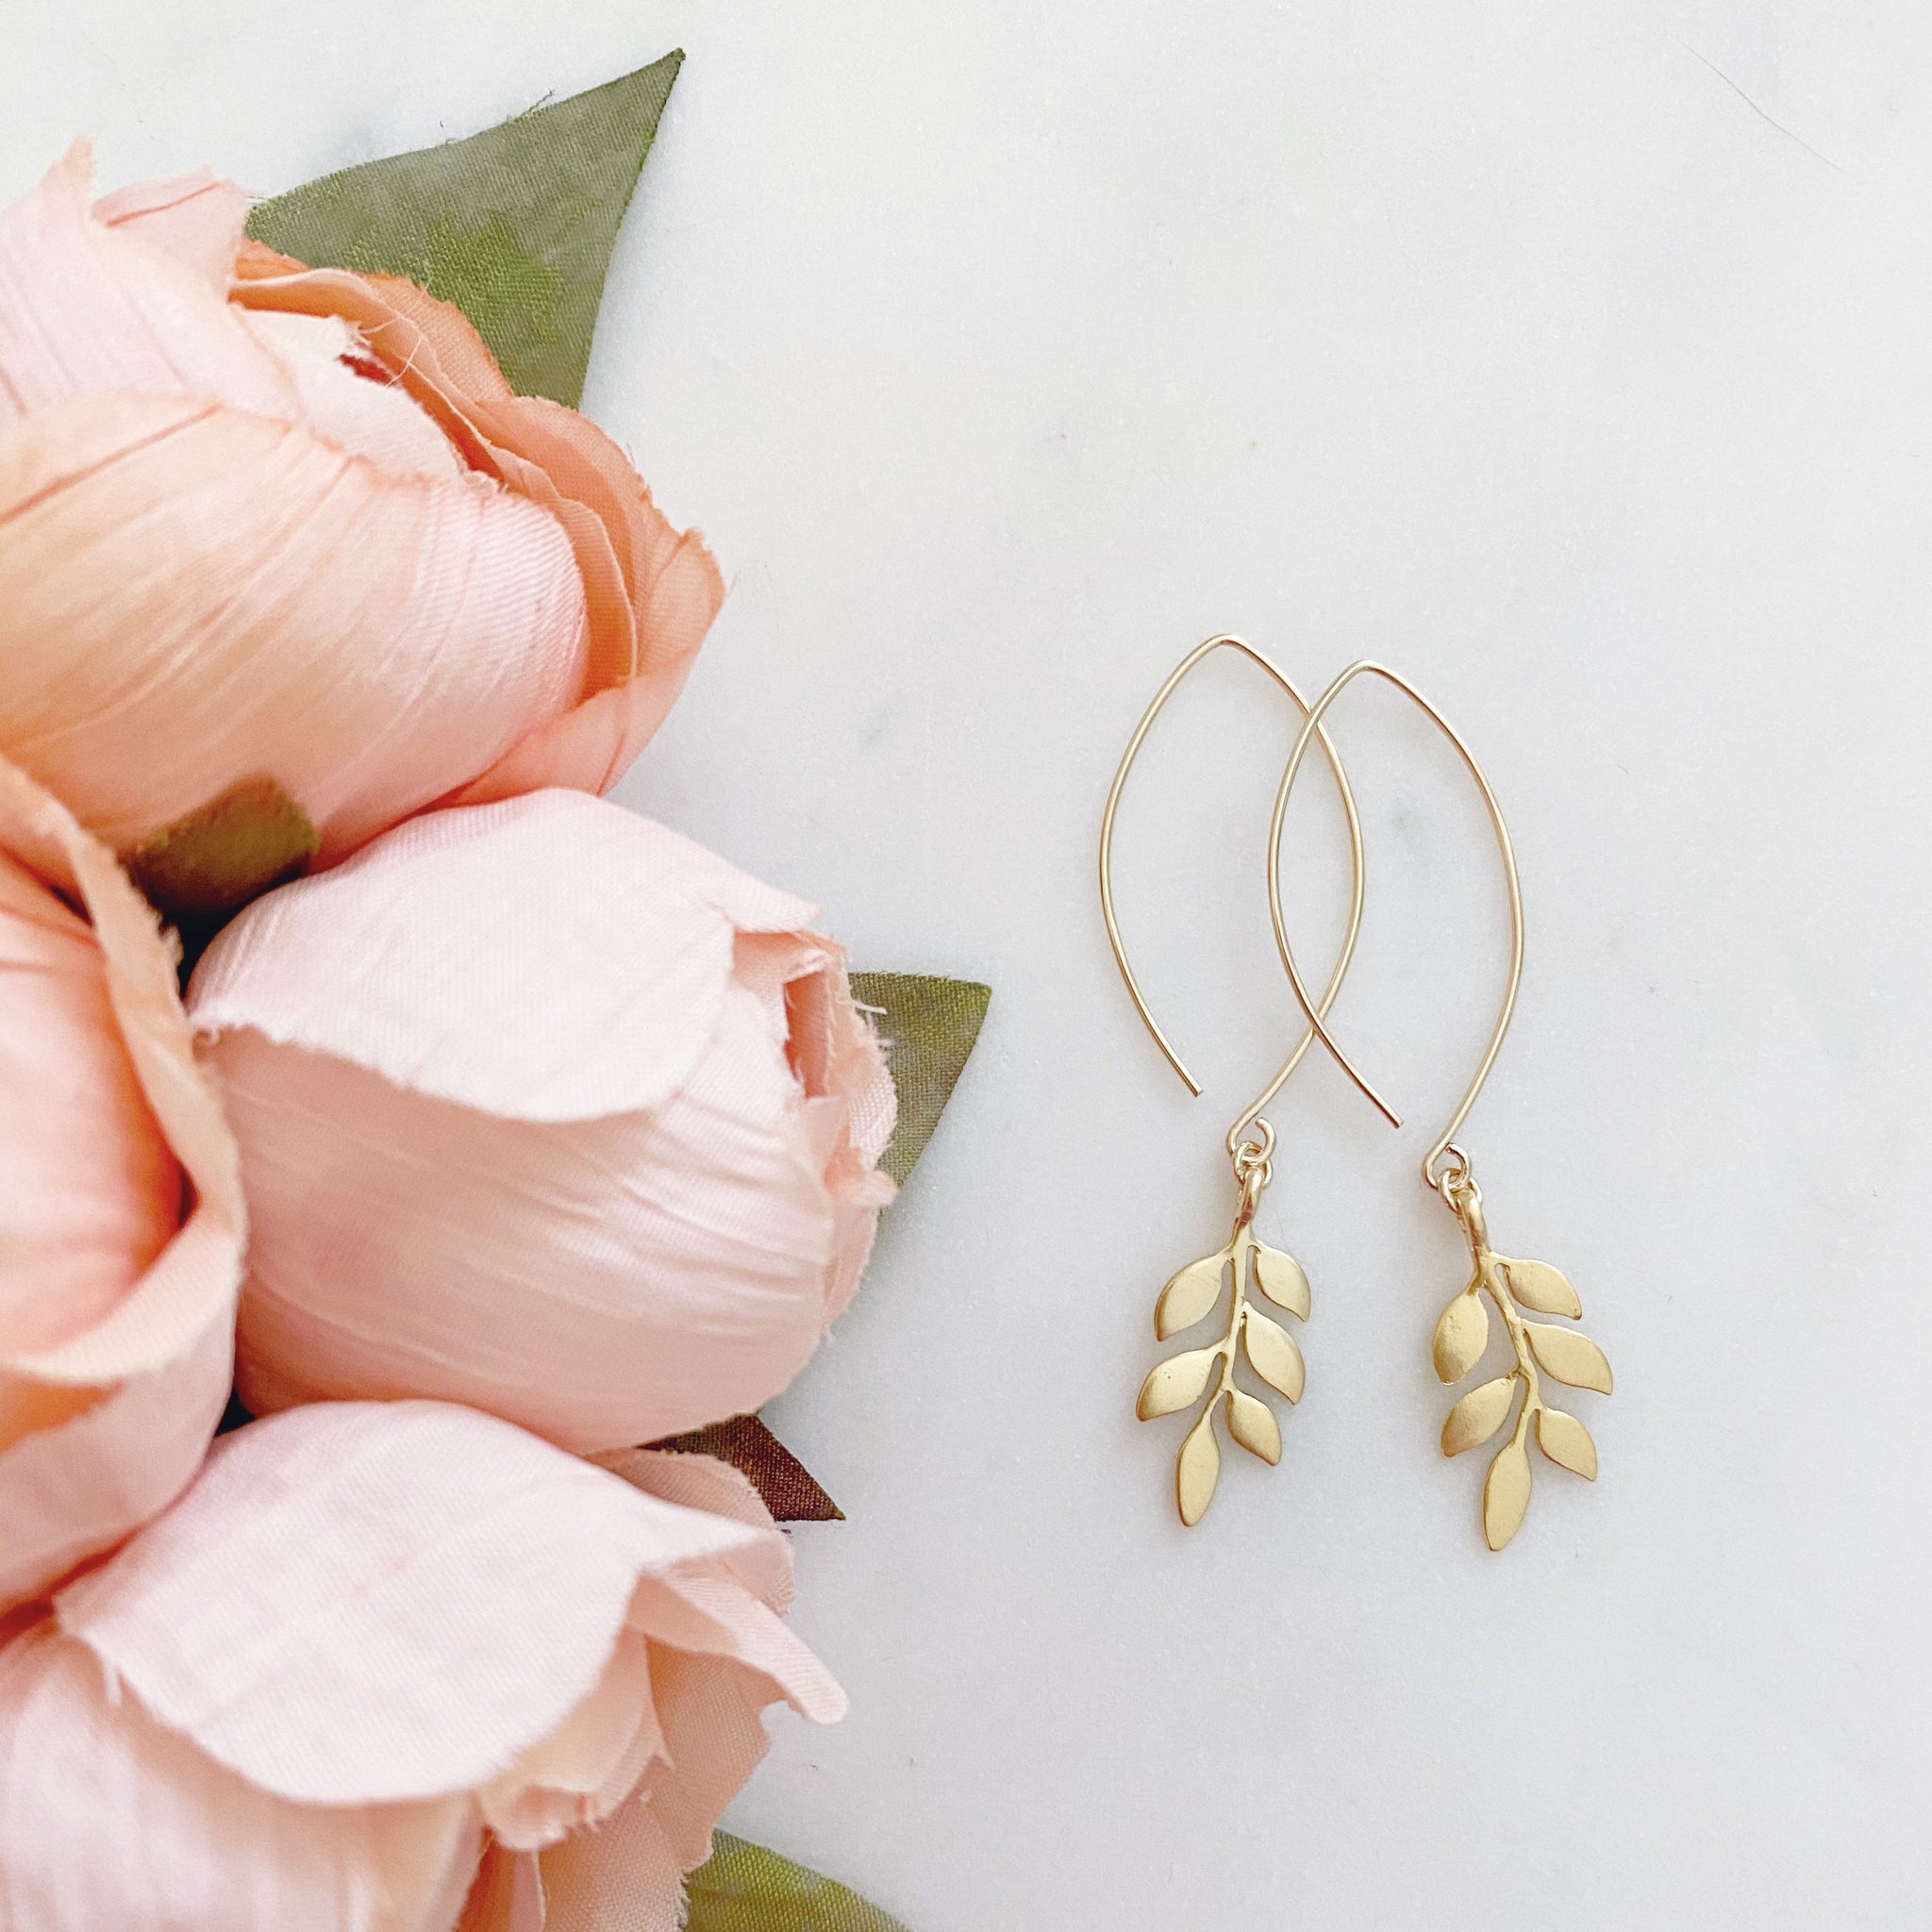 Gold Leaf Earrings, Fall Leaves Earrings, Gold Dangle Earrings, Best Friend Birthday Gifts, LINDEN